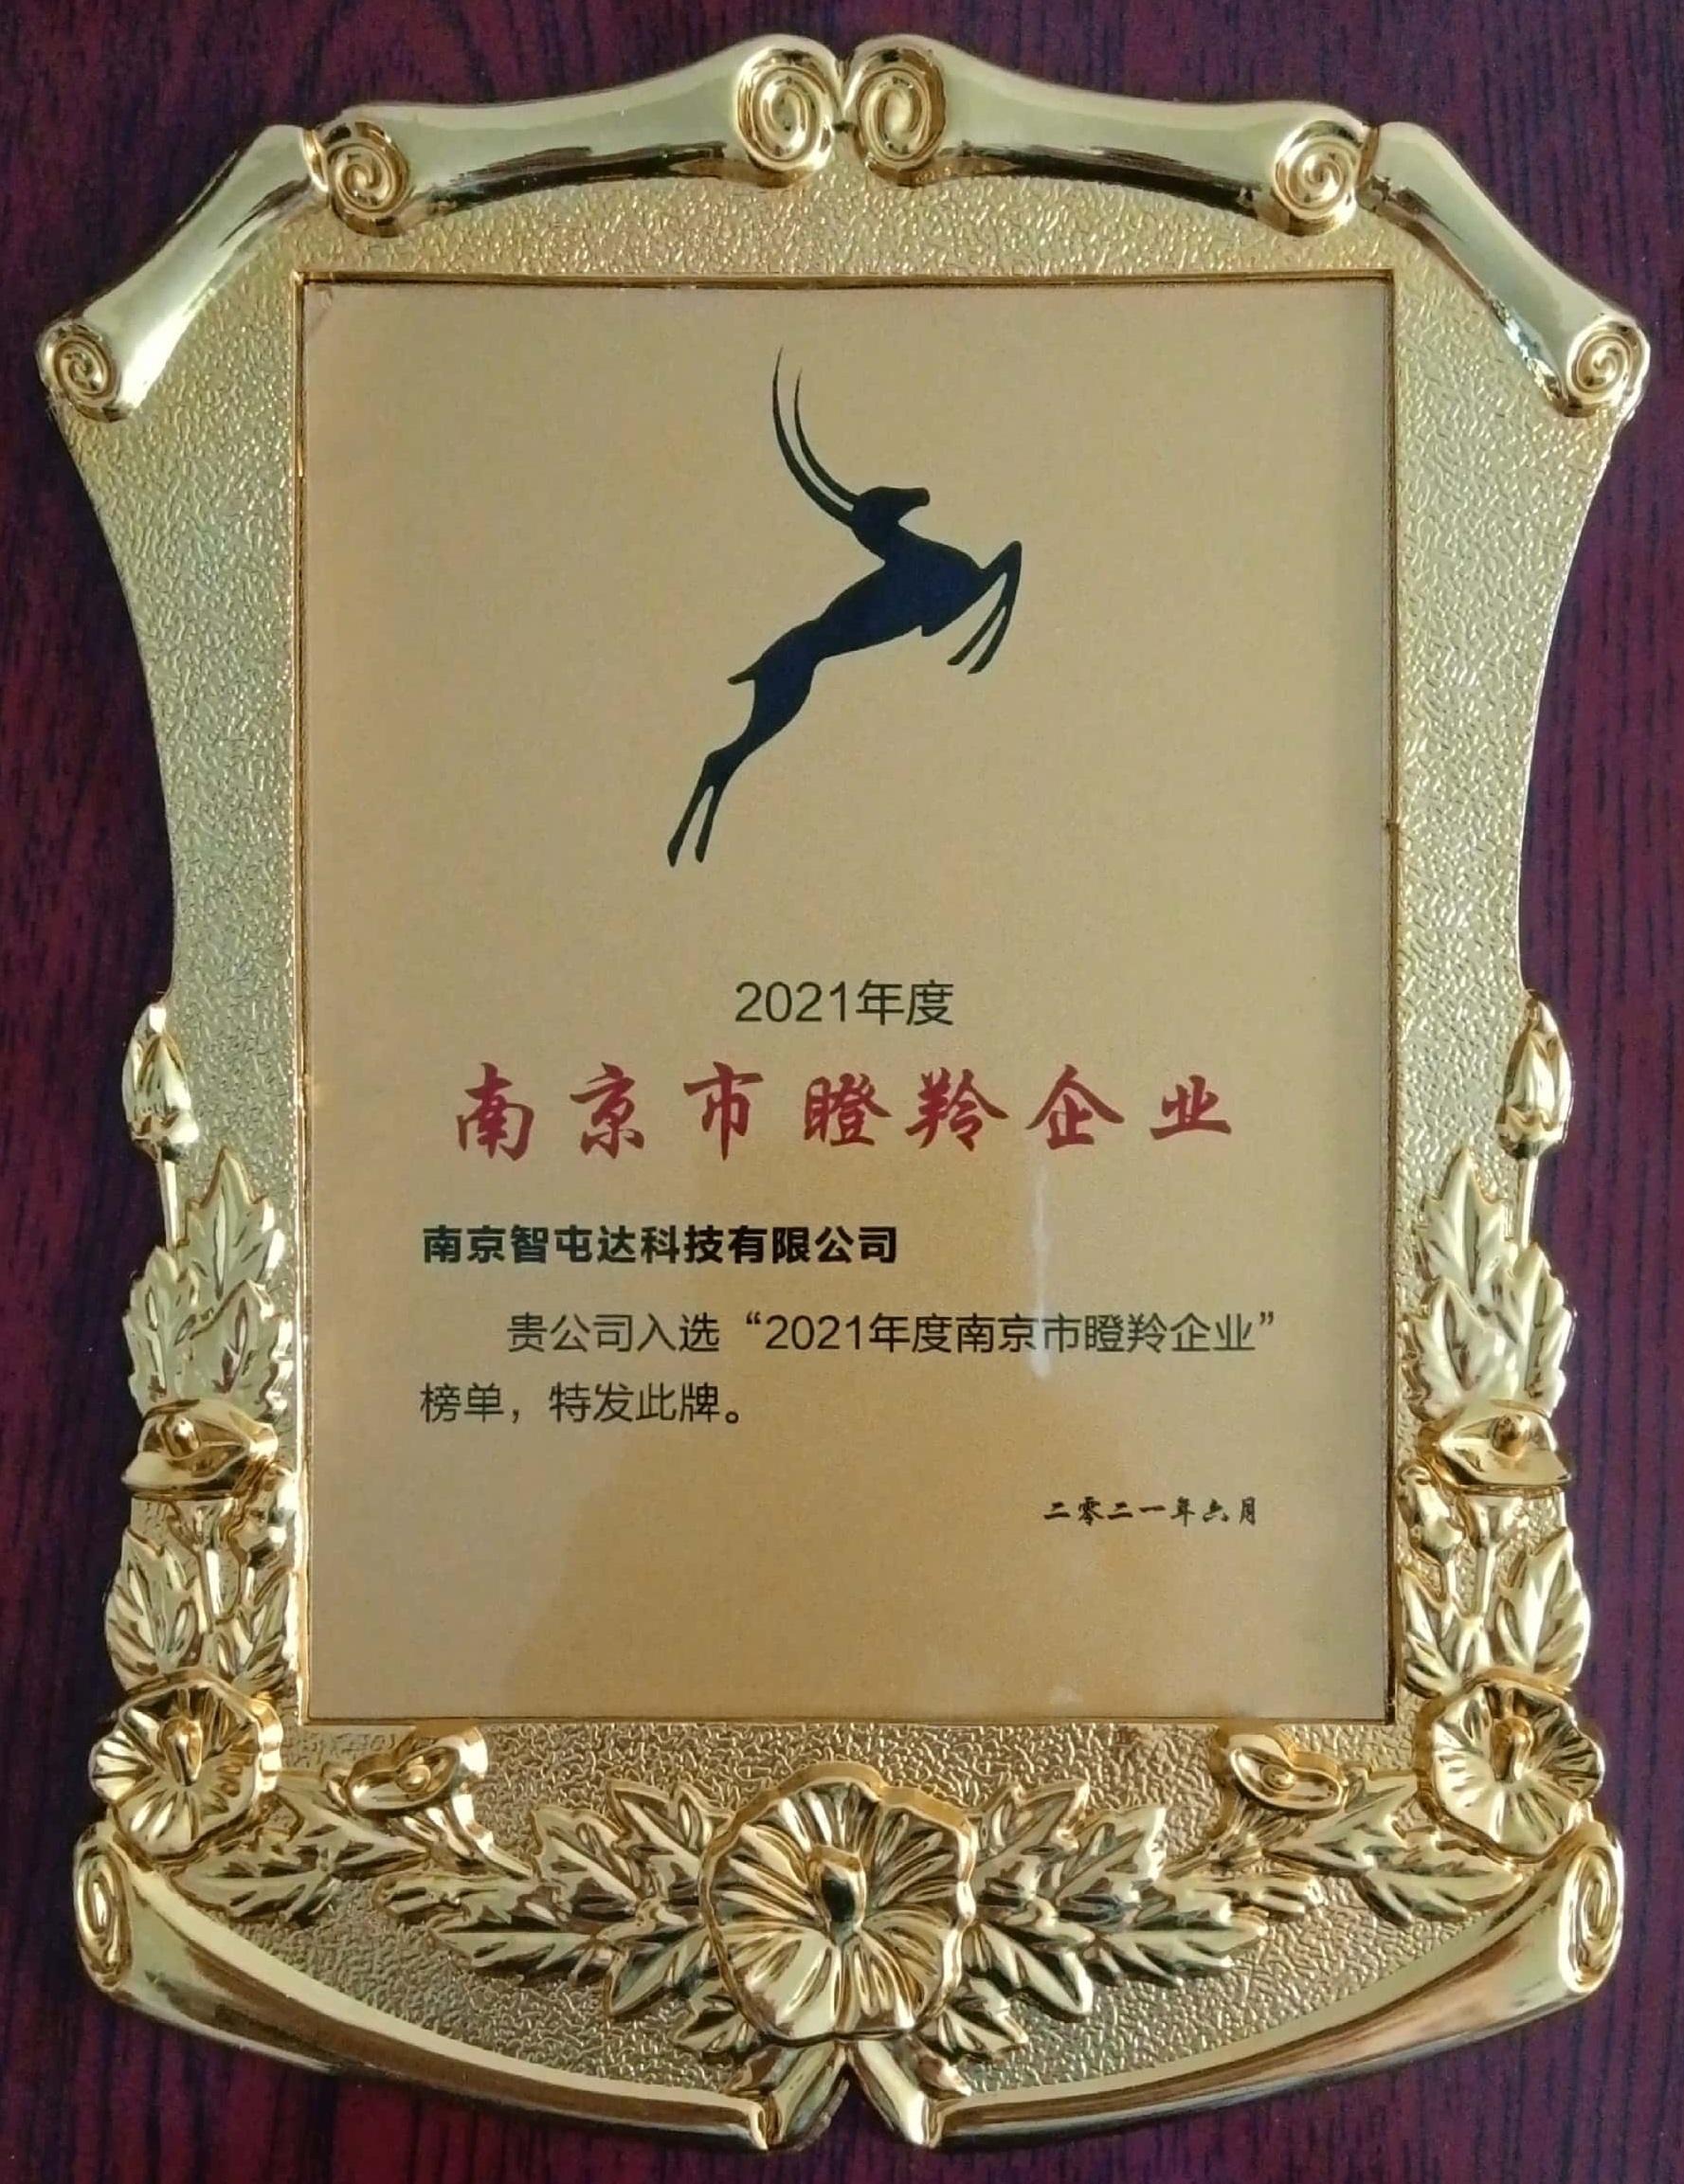 我公司入选“2021年度南京市瞪羚企业”